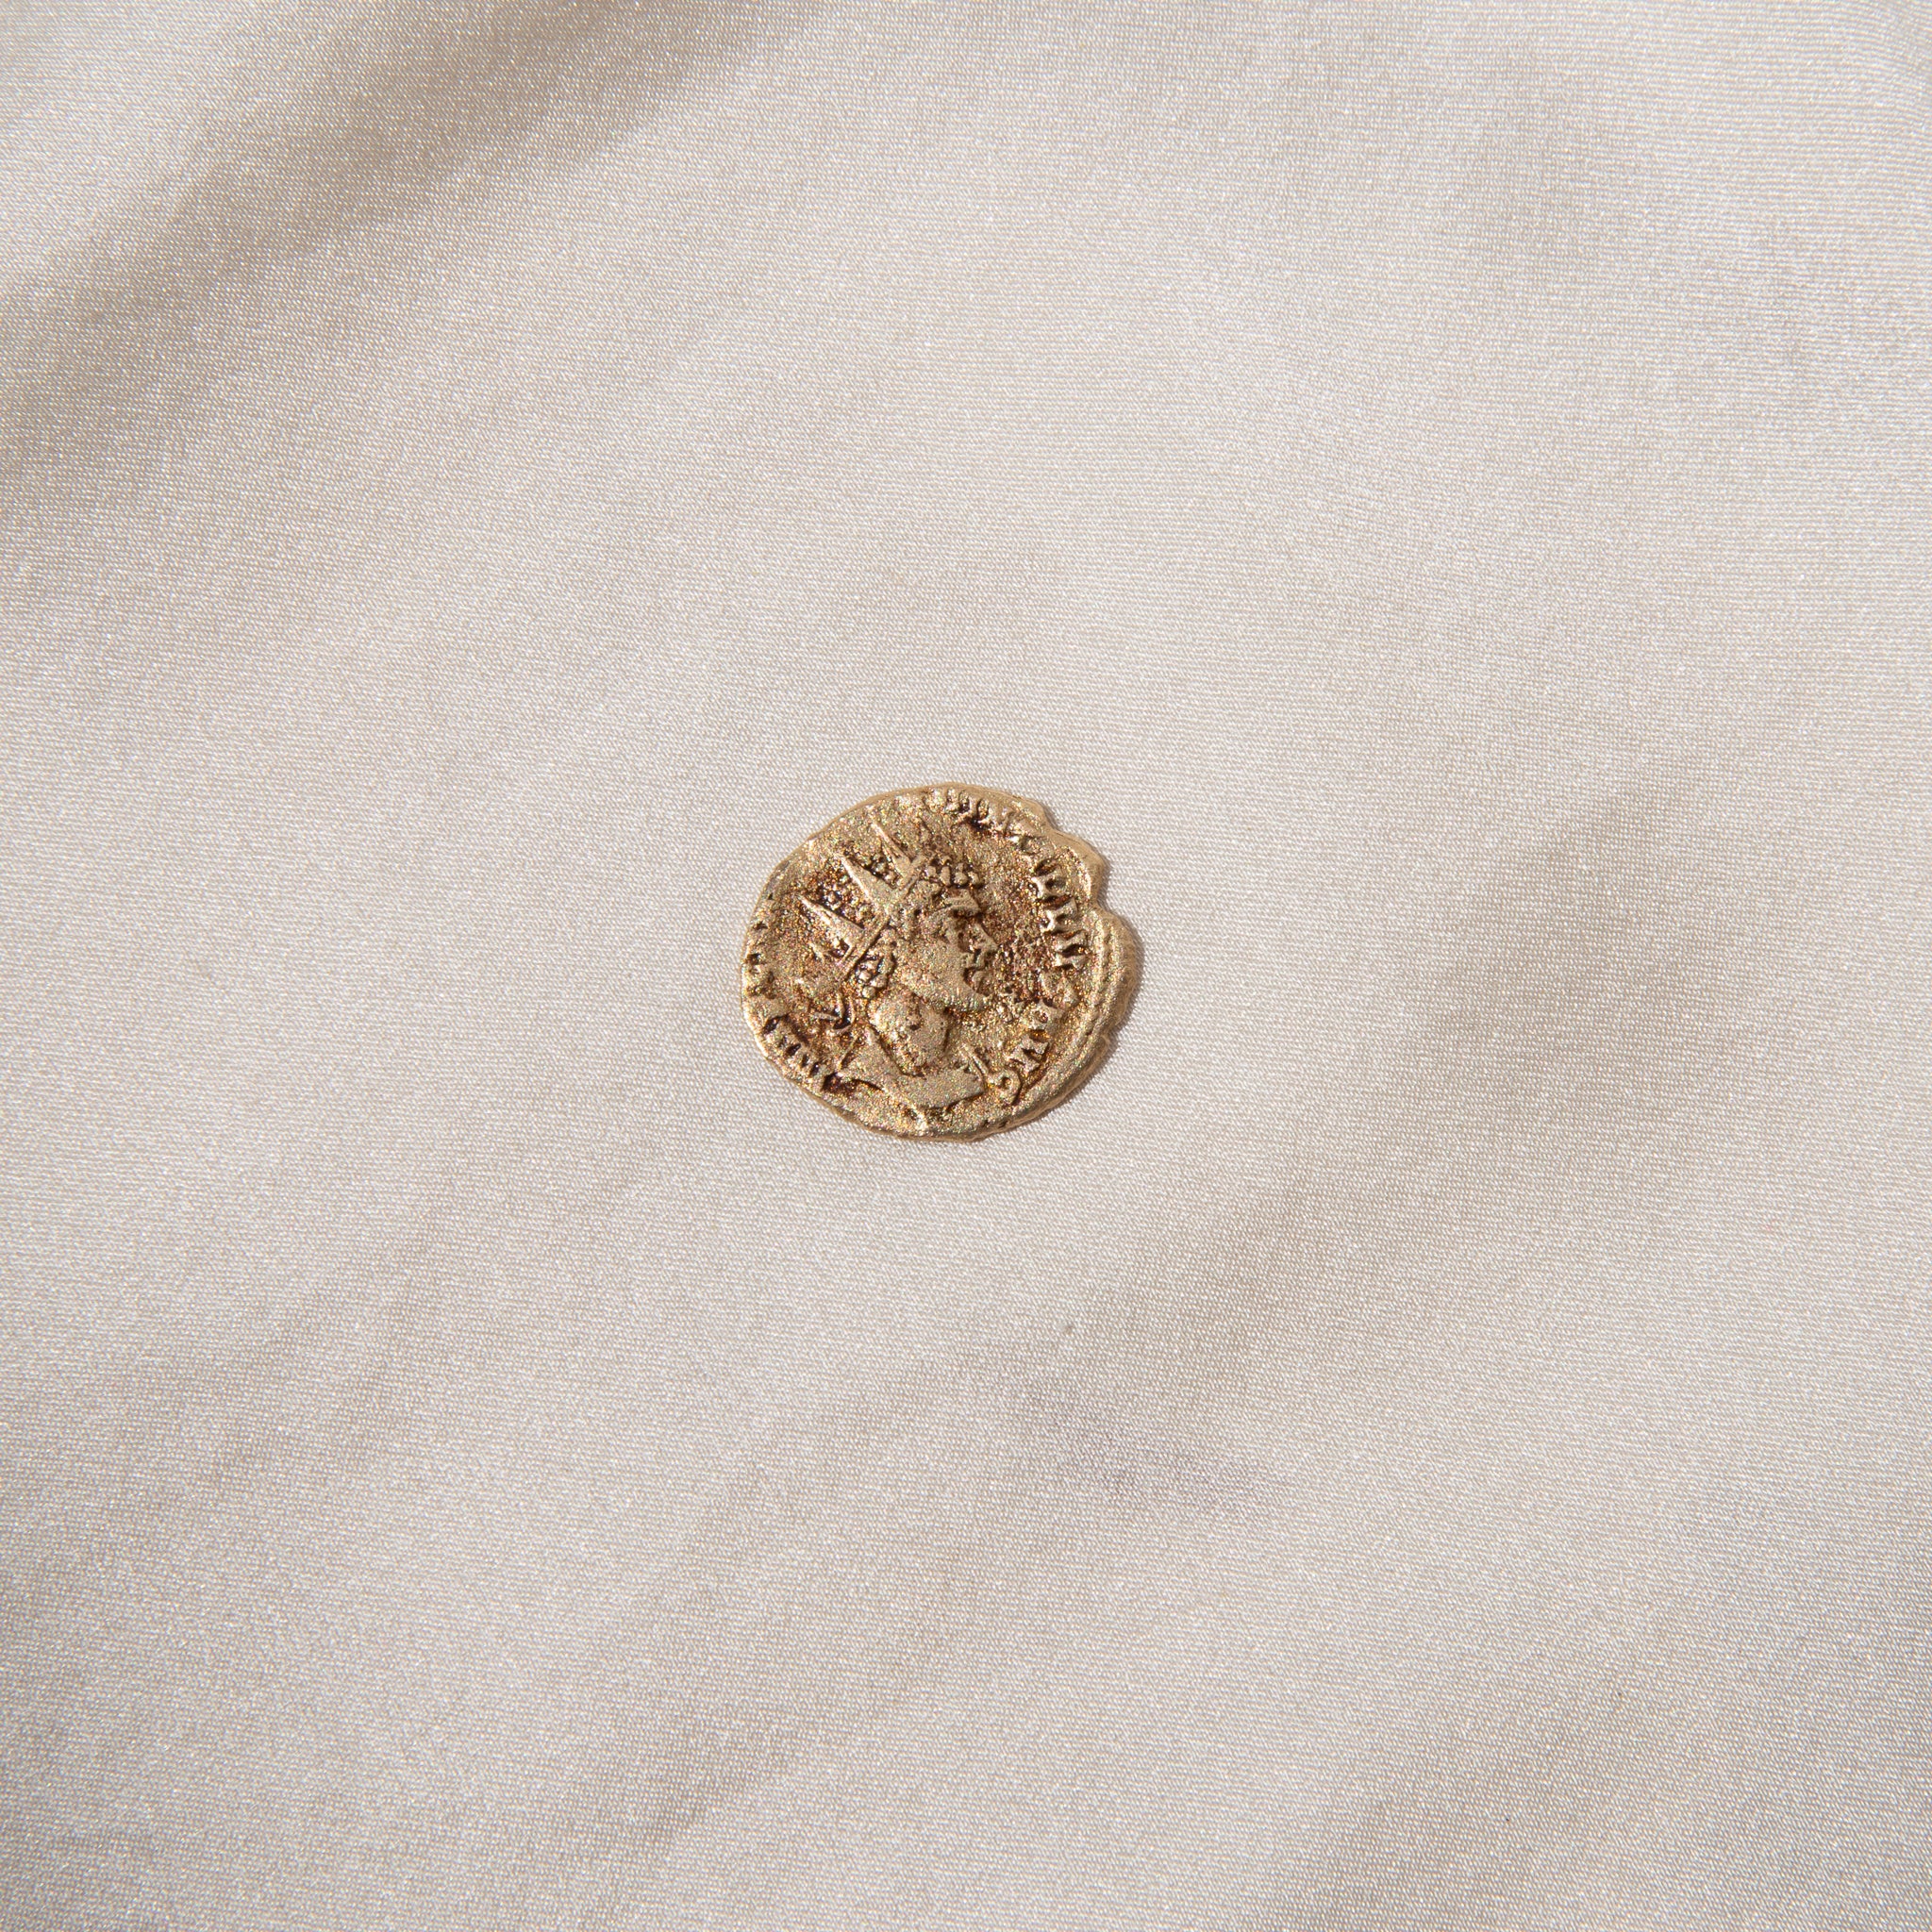 Castaway Coins Gold